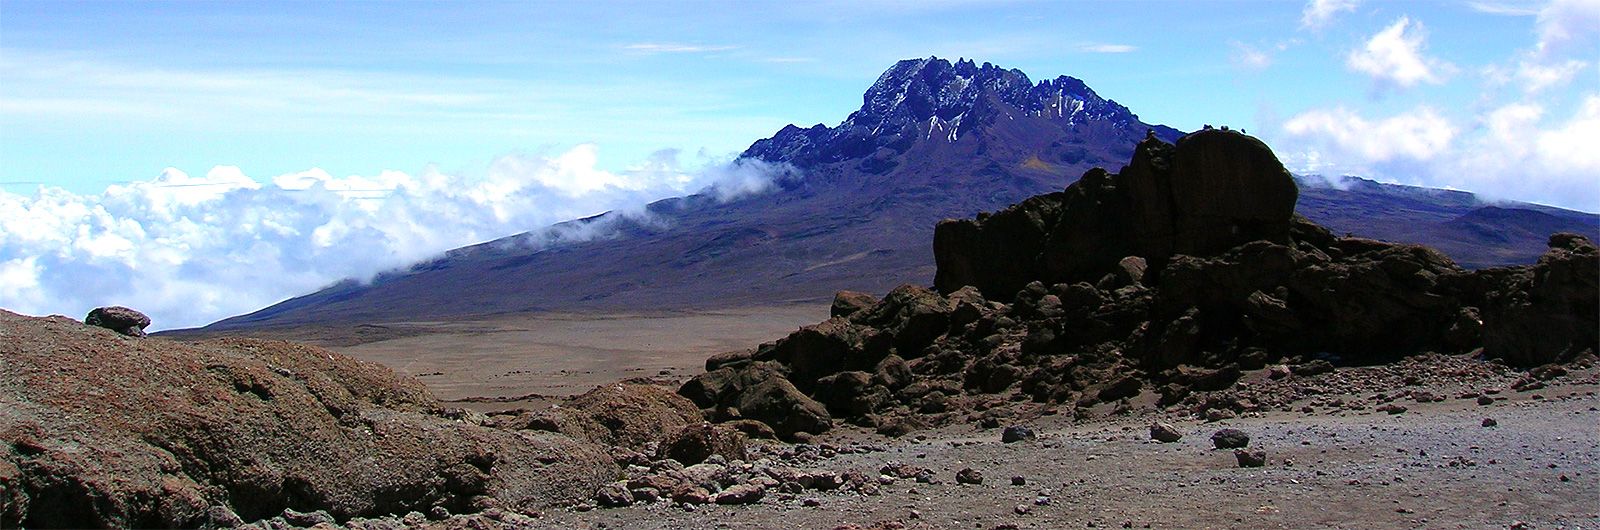 Subida al Kilimanjaro